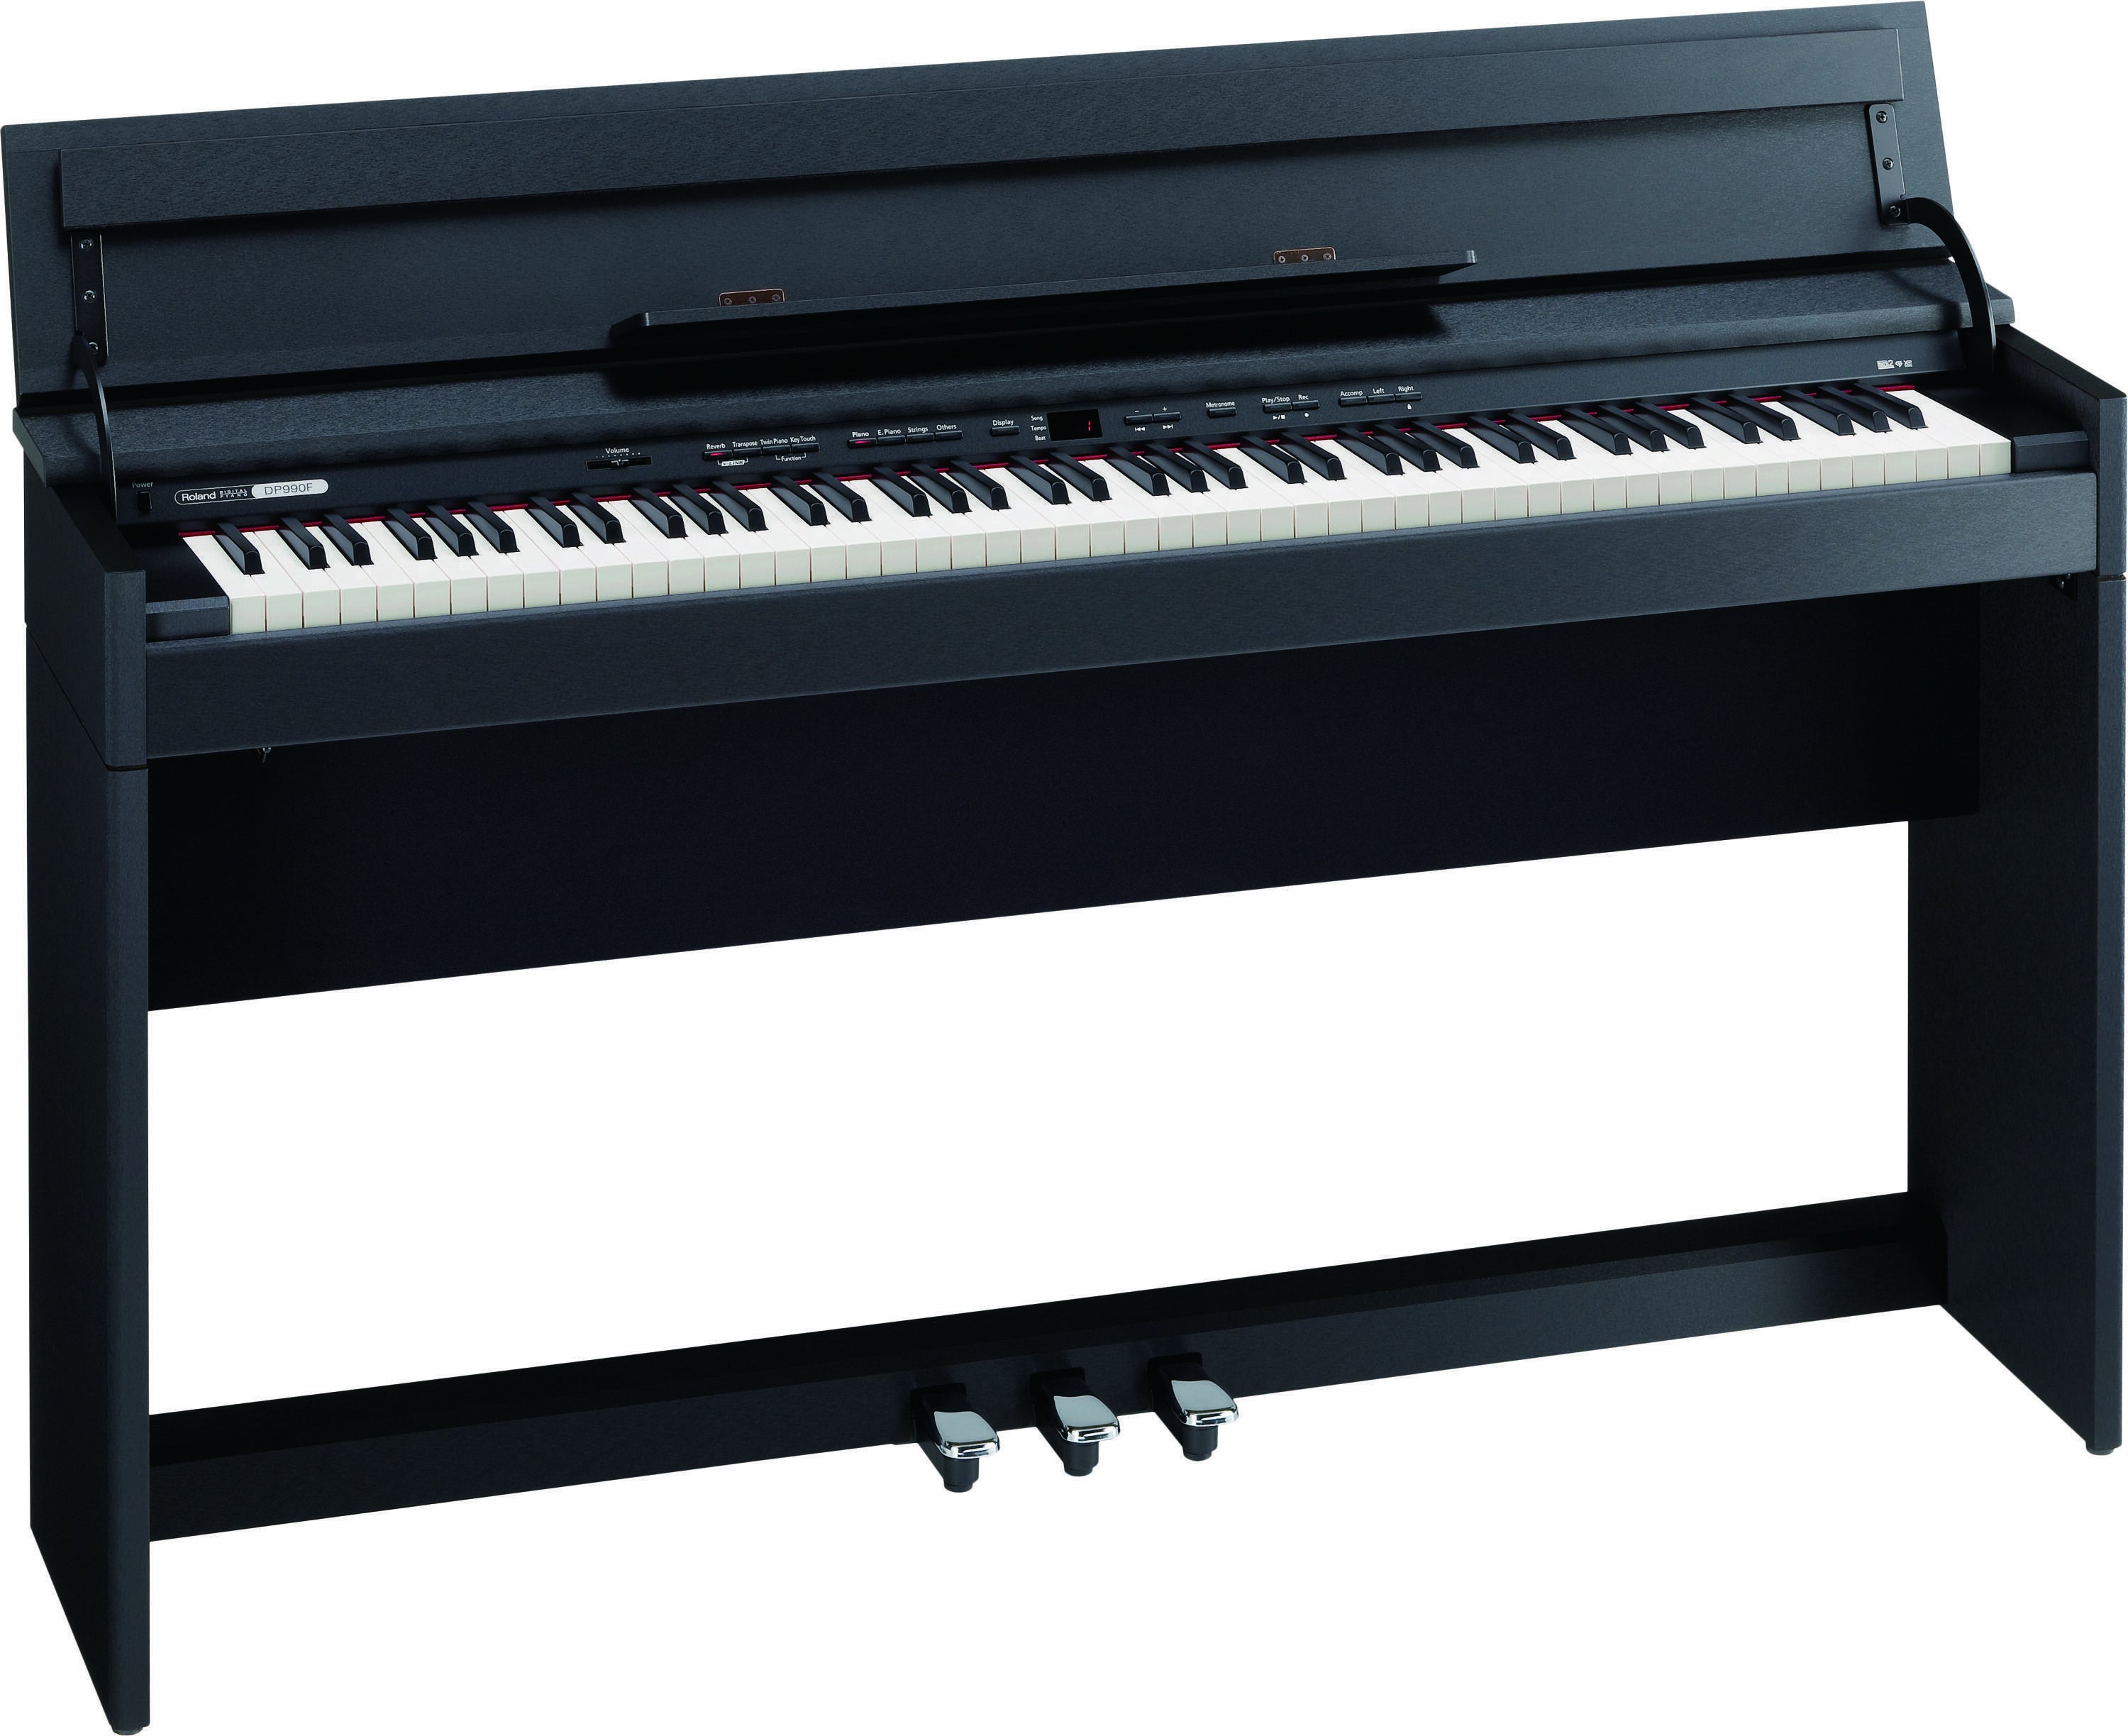 即納ありRoland DP990RF-PE 電子ピアノ ブラック 美品 高級感 艶あり 鍵盤楽器